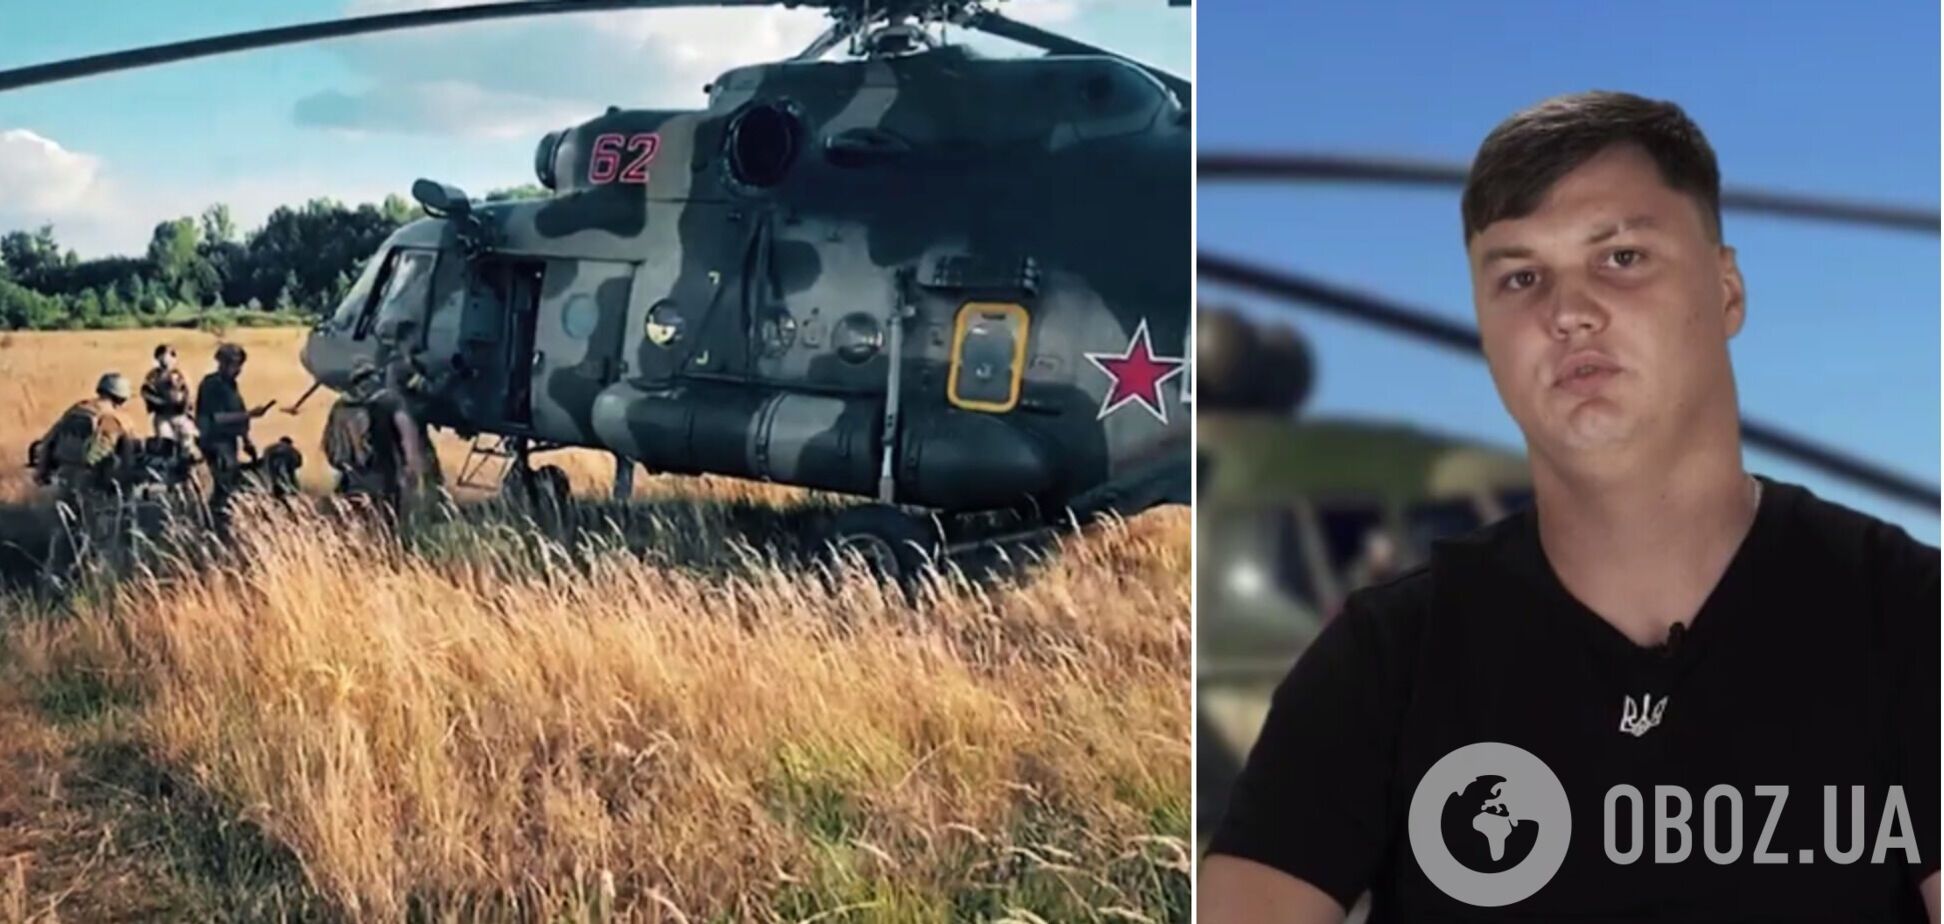 Один пилот сдался, два других члена экипажа погибли: новые детали операции по приземлению российского Ми-8 на Харьковщине